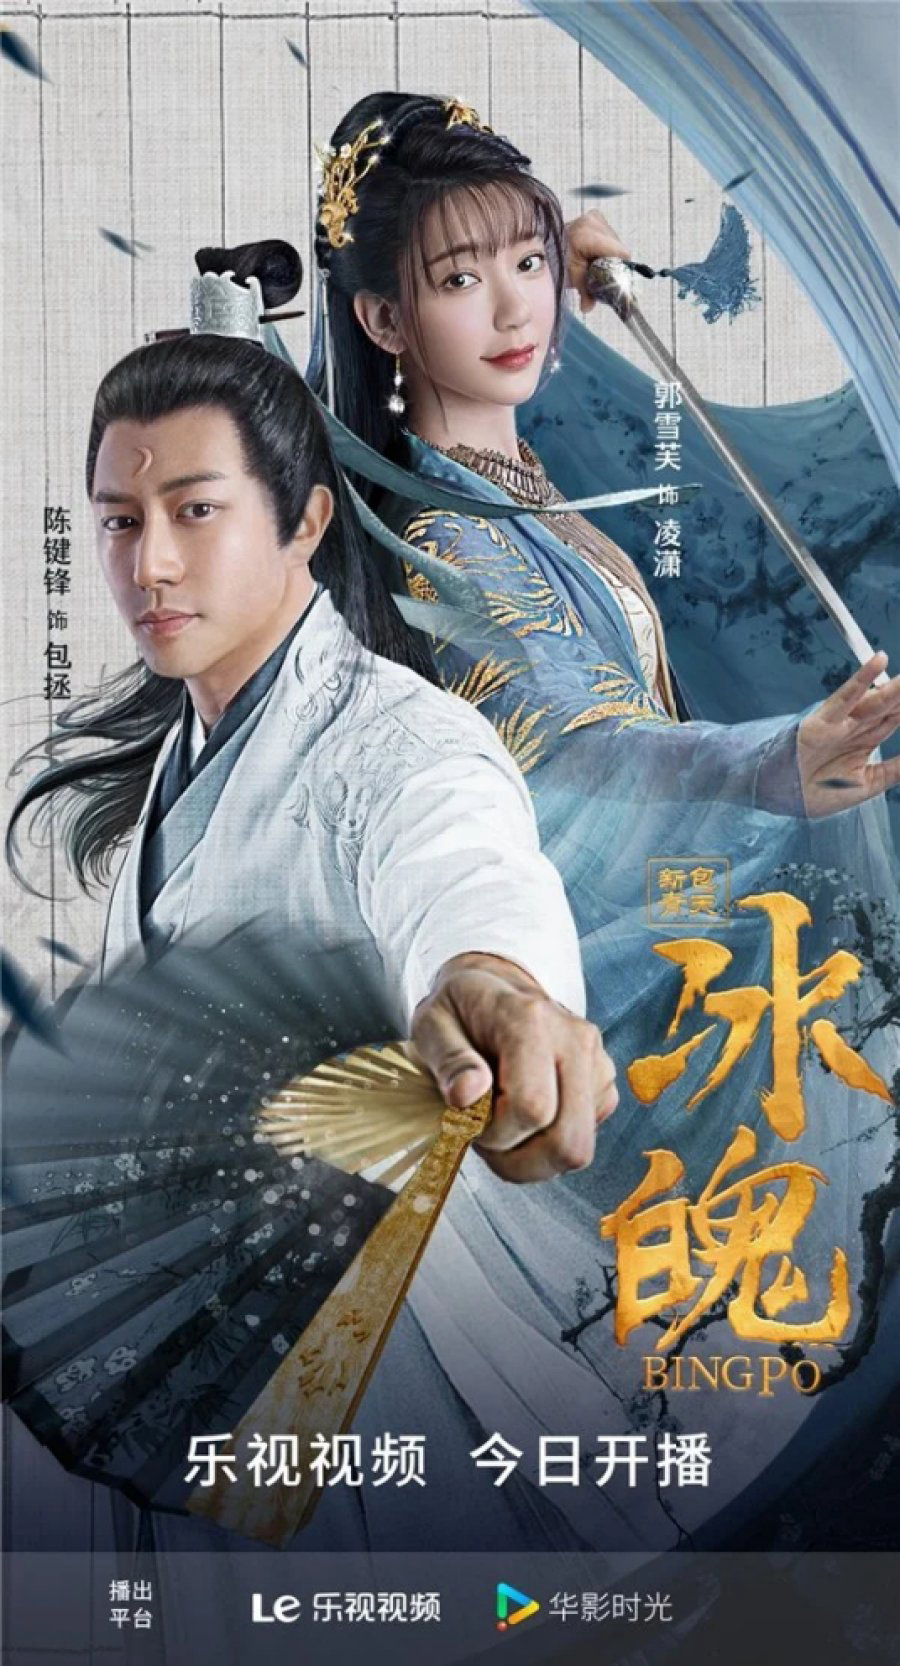 Poster Phim Tân Bao Thanh Thiên: Băng Phách (New Bao Qingtian: Ice Soul)